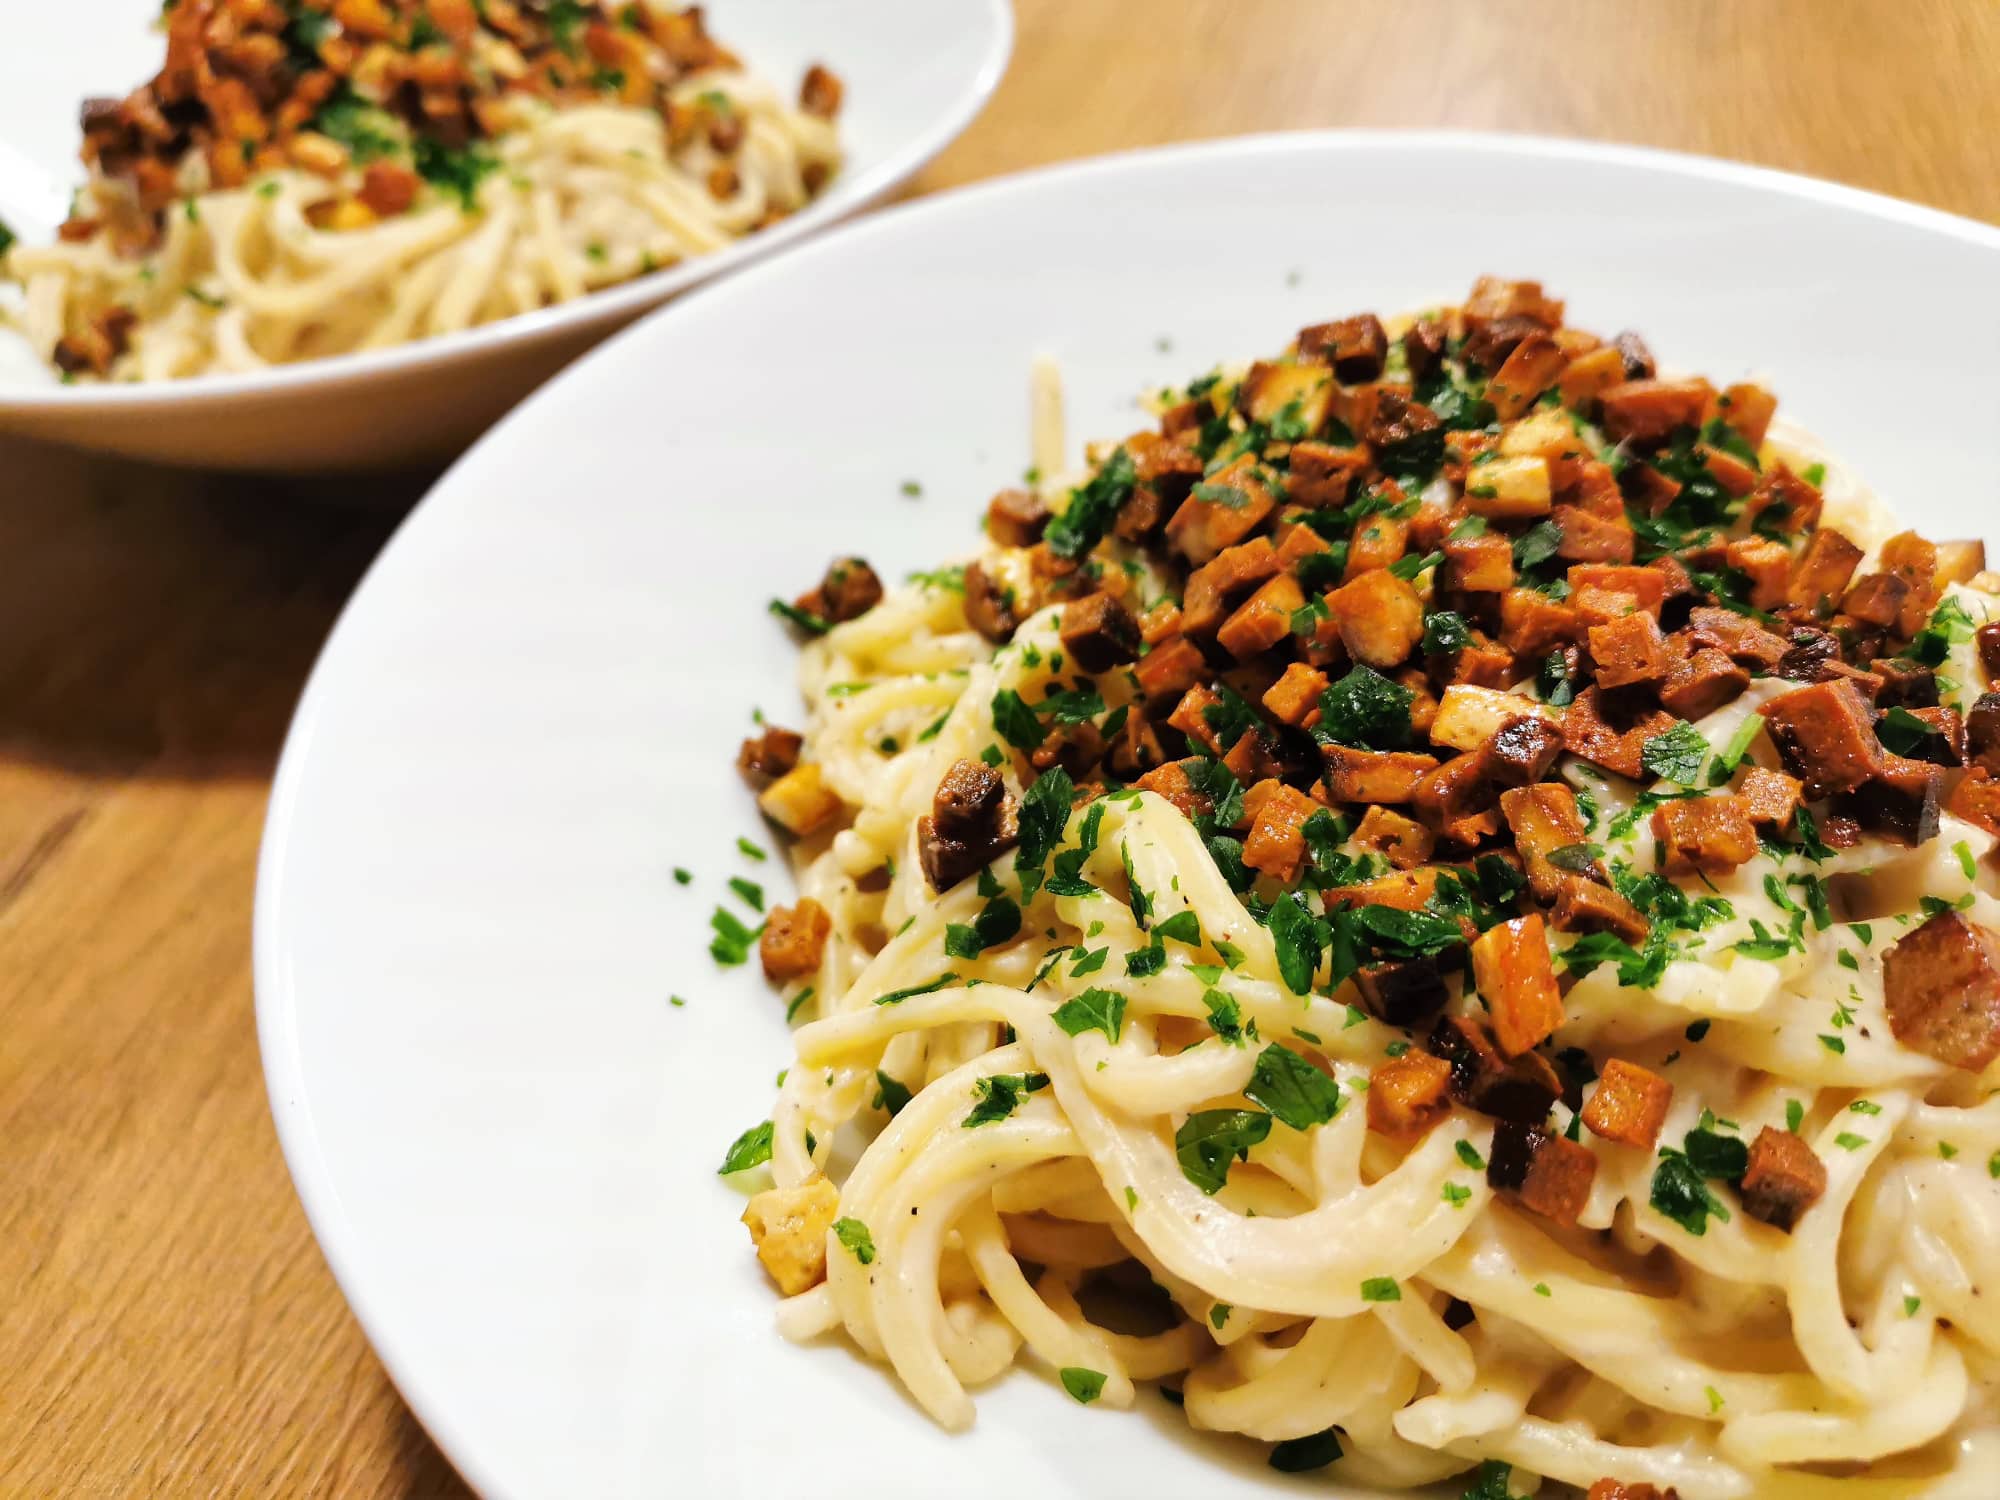 Spaghetti-Pasta mit Karfiolcreme, bestreut mit Tofuspeckwürfeln und gehackter Petersilie, angerichtet in einem weißen Teller.